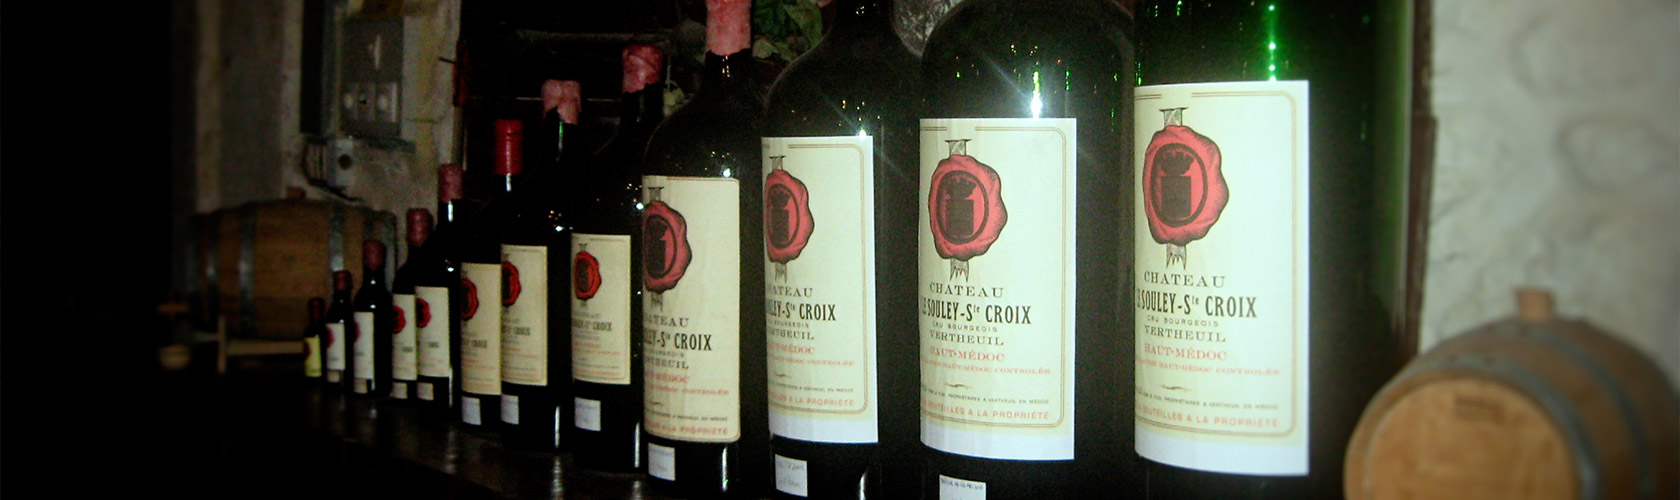 Château Souley Sainte Croix - Nos vins